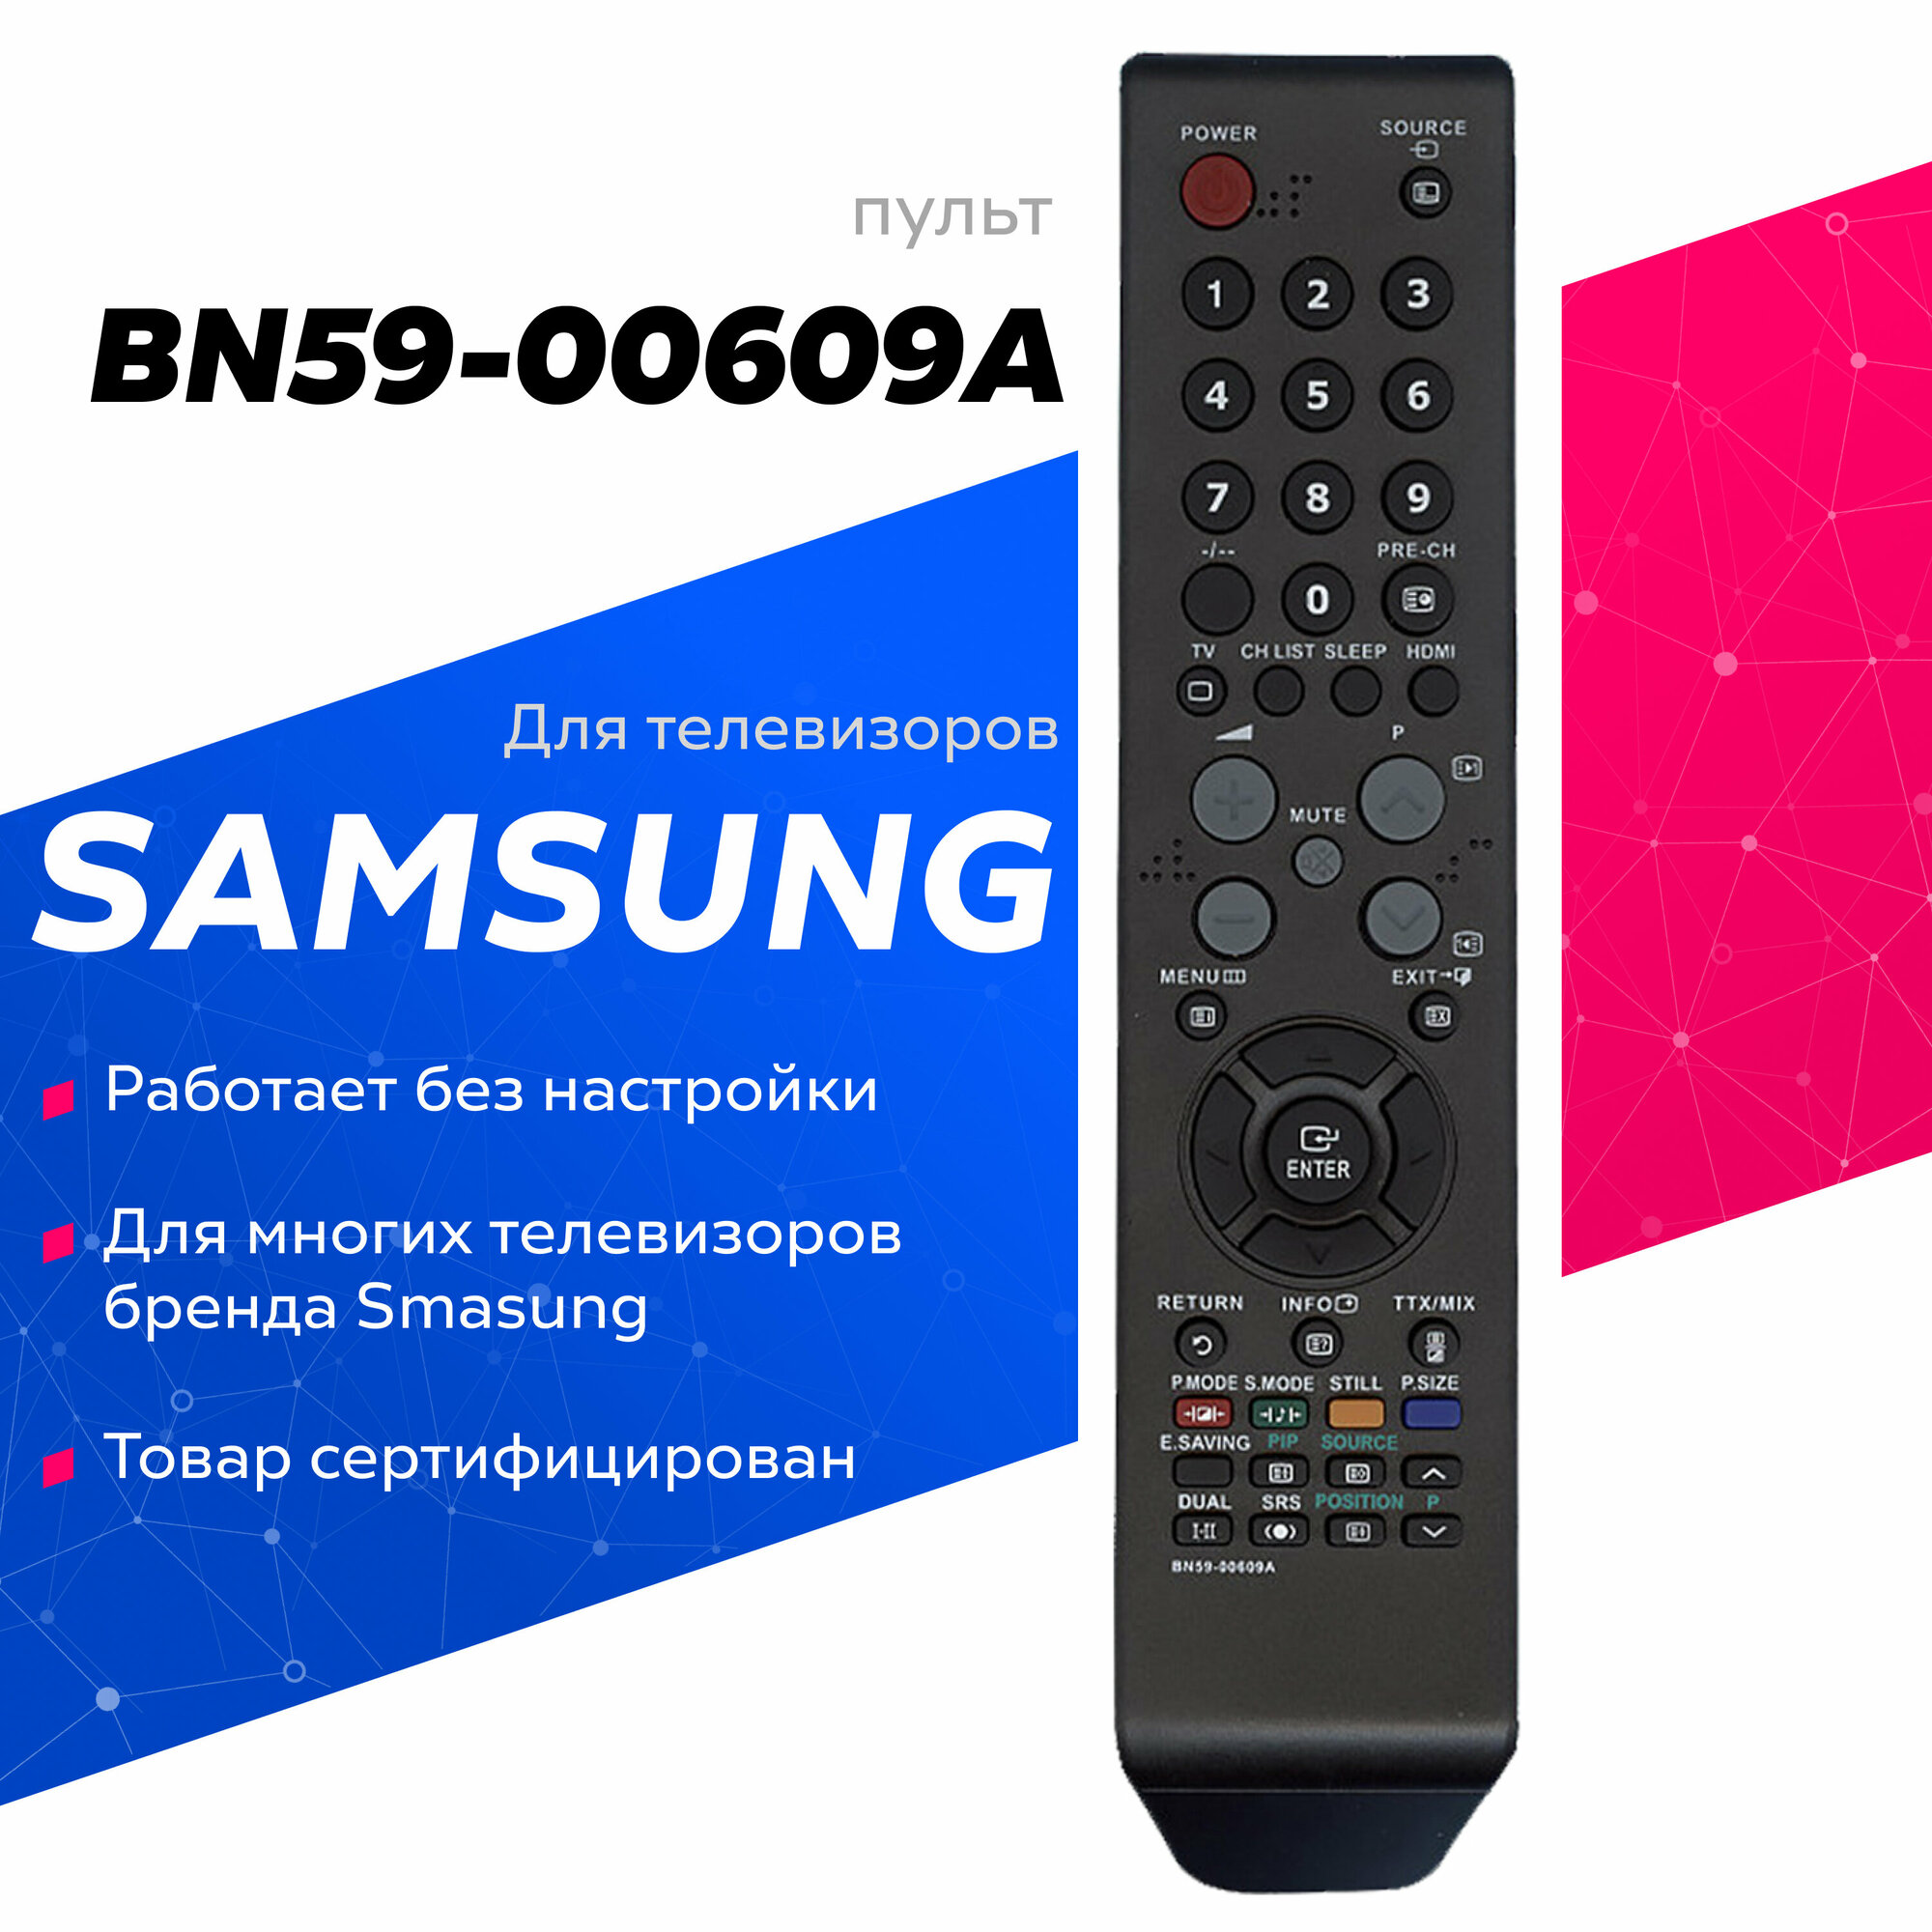 Пульт ДУ Huayu BN59-00609A для для телевизоров Samsung, черный